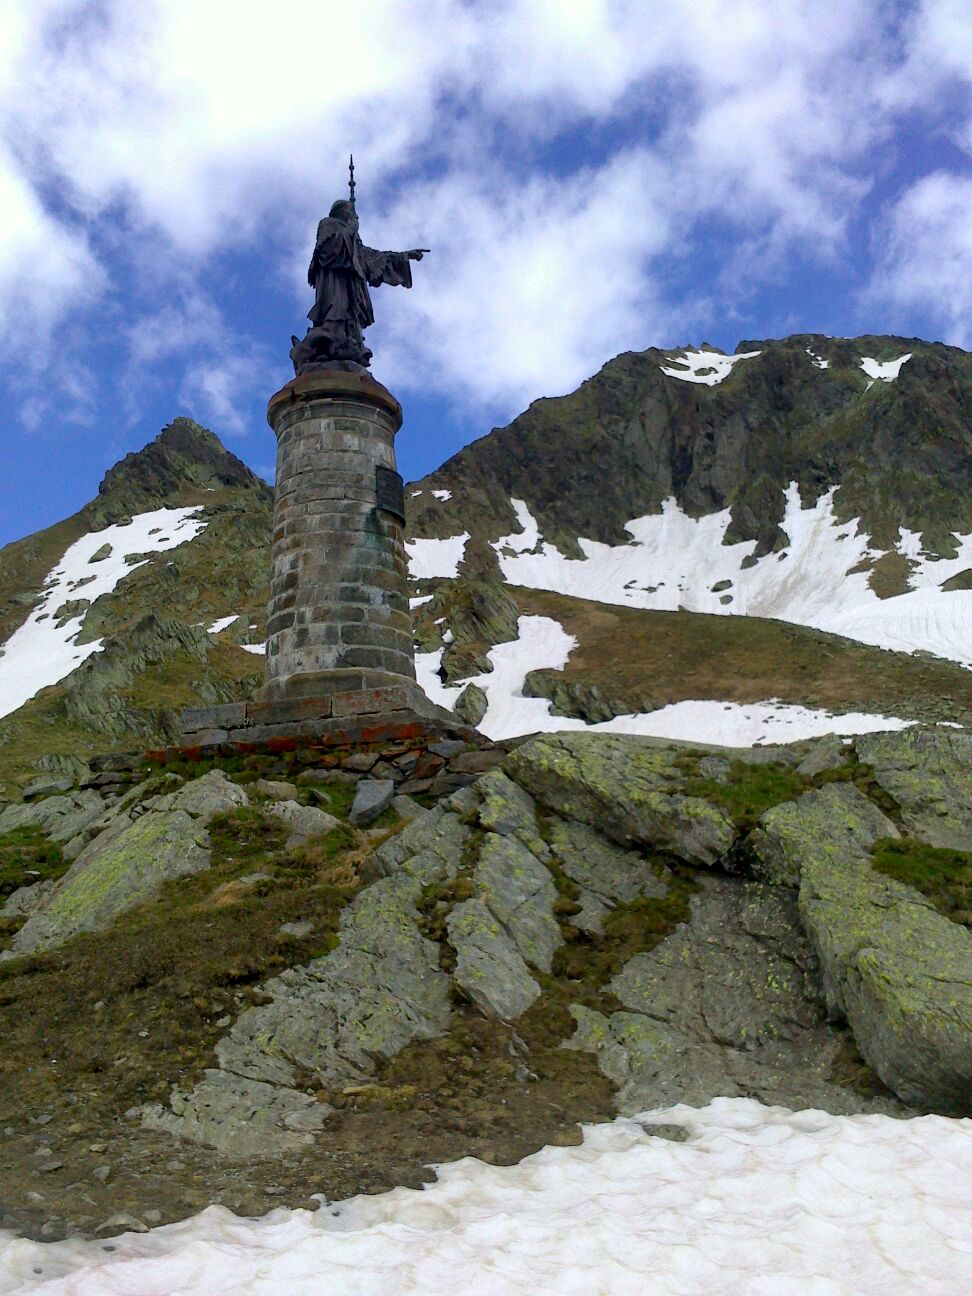 Statue of Saint Bernard at the Great Saint Bernard pass